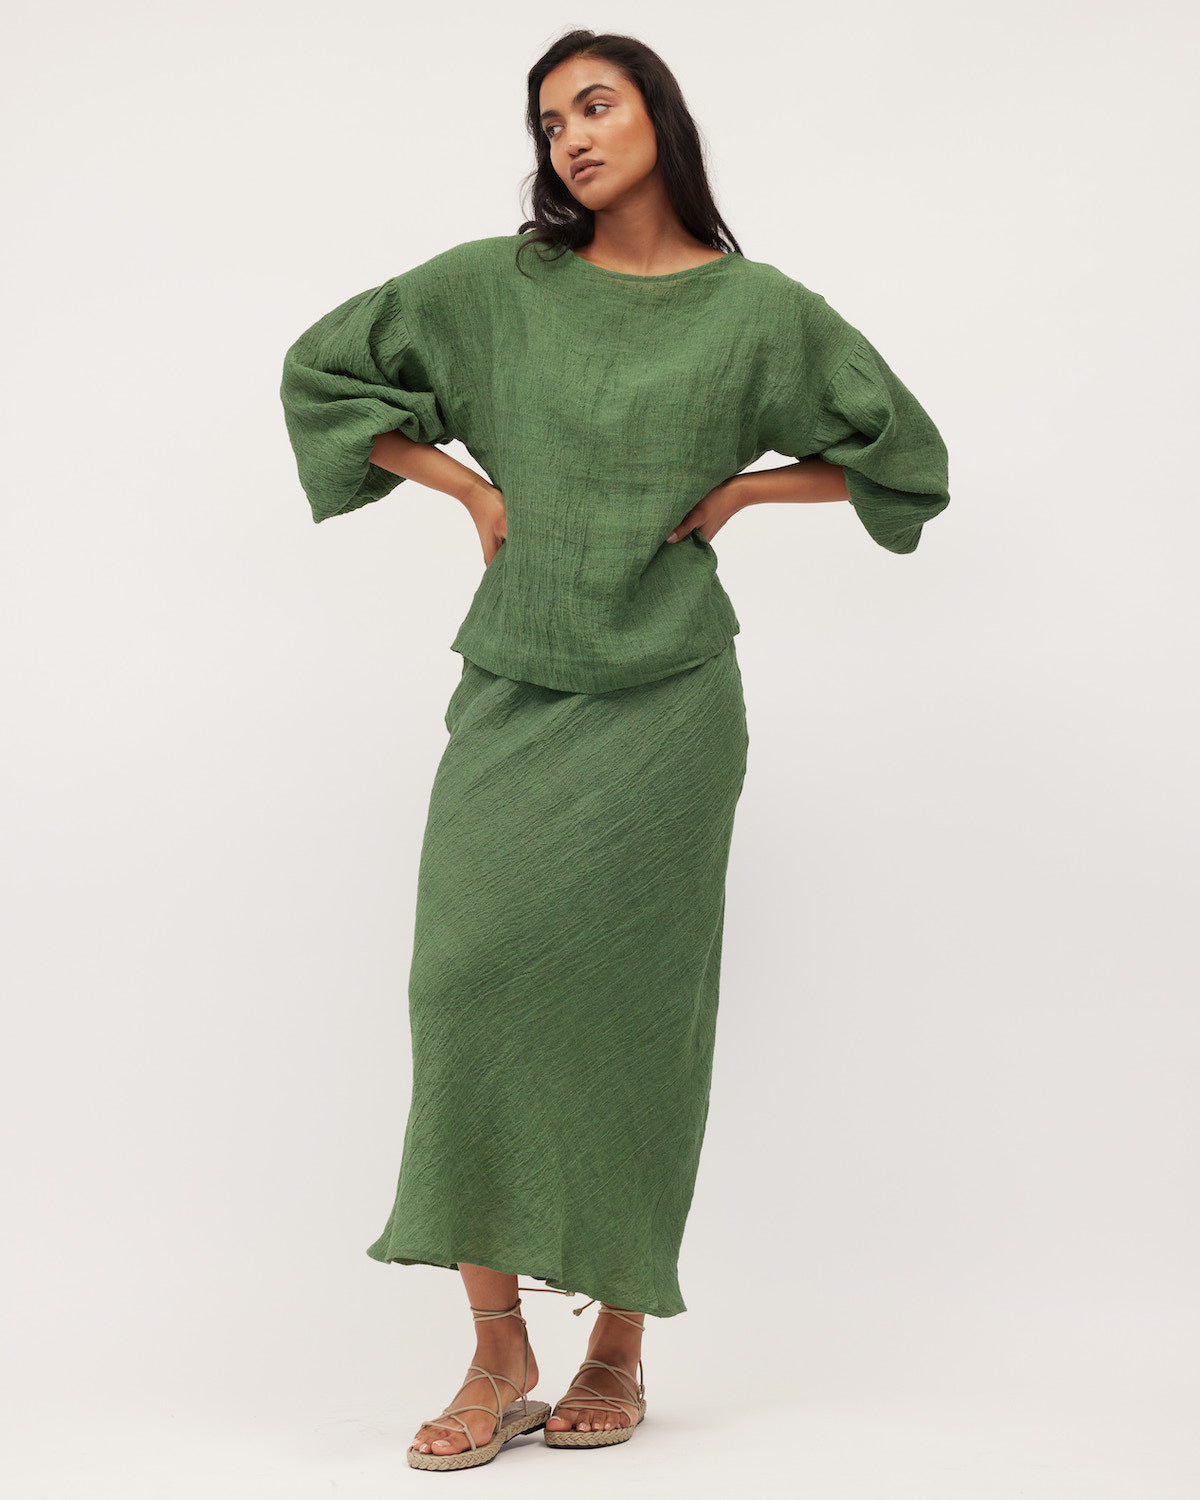 Bella Blouse | Green Linen $249